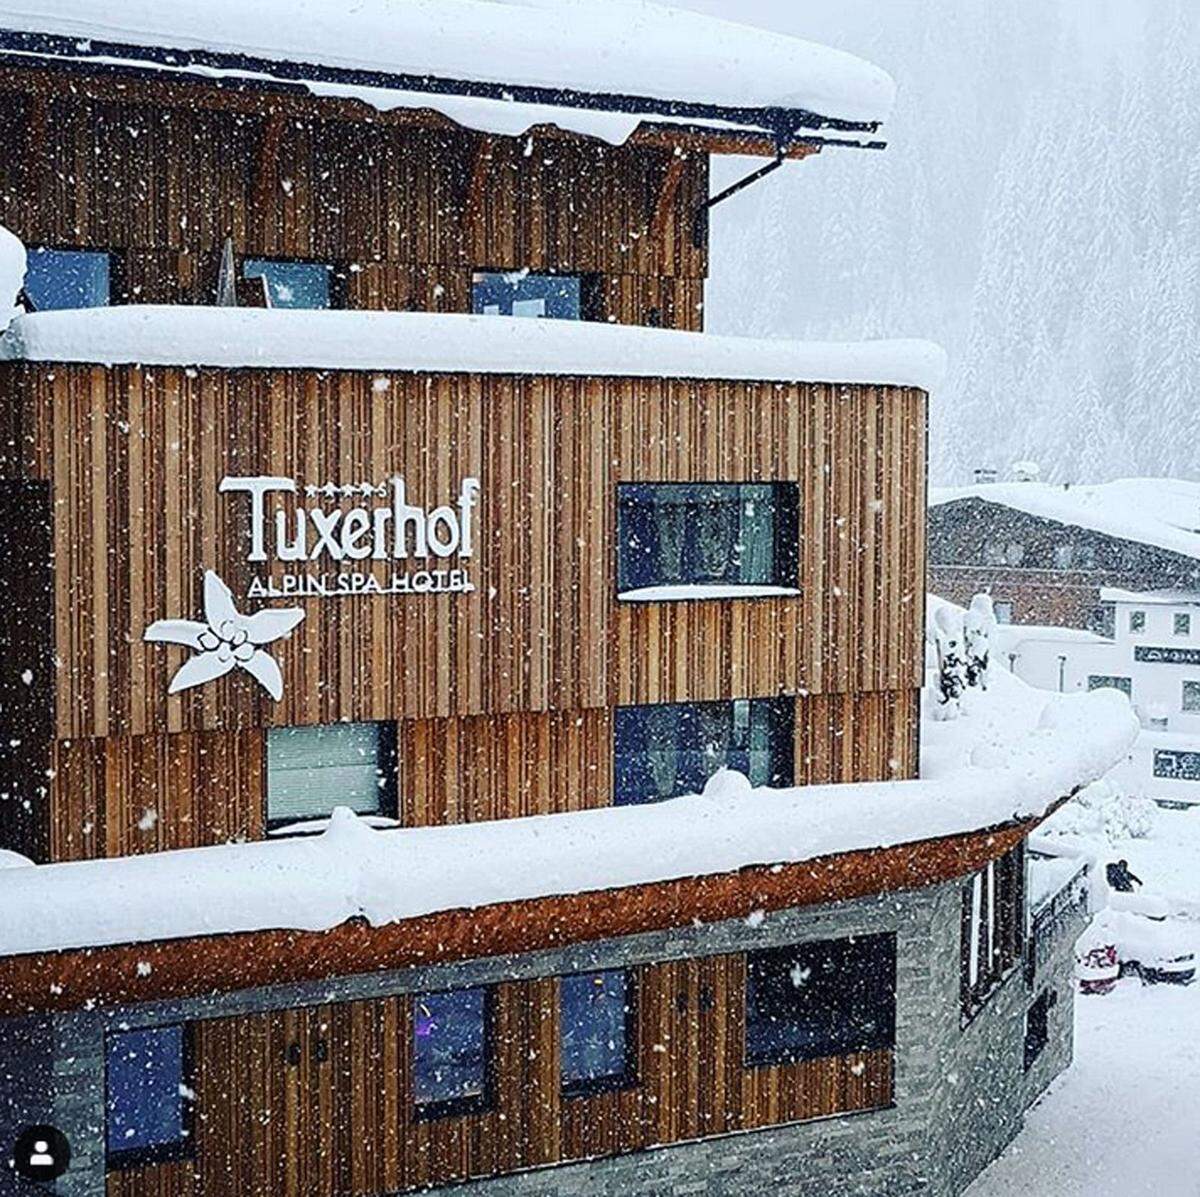 Platz 1: Hotel Alpin Spa Tuxerhof, Tux  2018 wurde das Hotel mit Blick über das Zillertal umfangreich renoviert. "Ein außergewöhnlicher Kraftplatz bei dem Wohlfühlen, Genuss und unverfälschte Natur im Zentrum stehen", heißt es auf der Homepage.